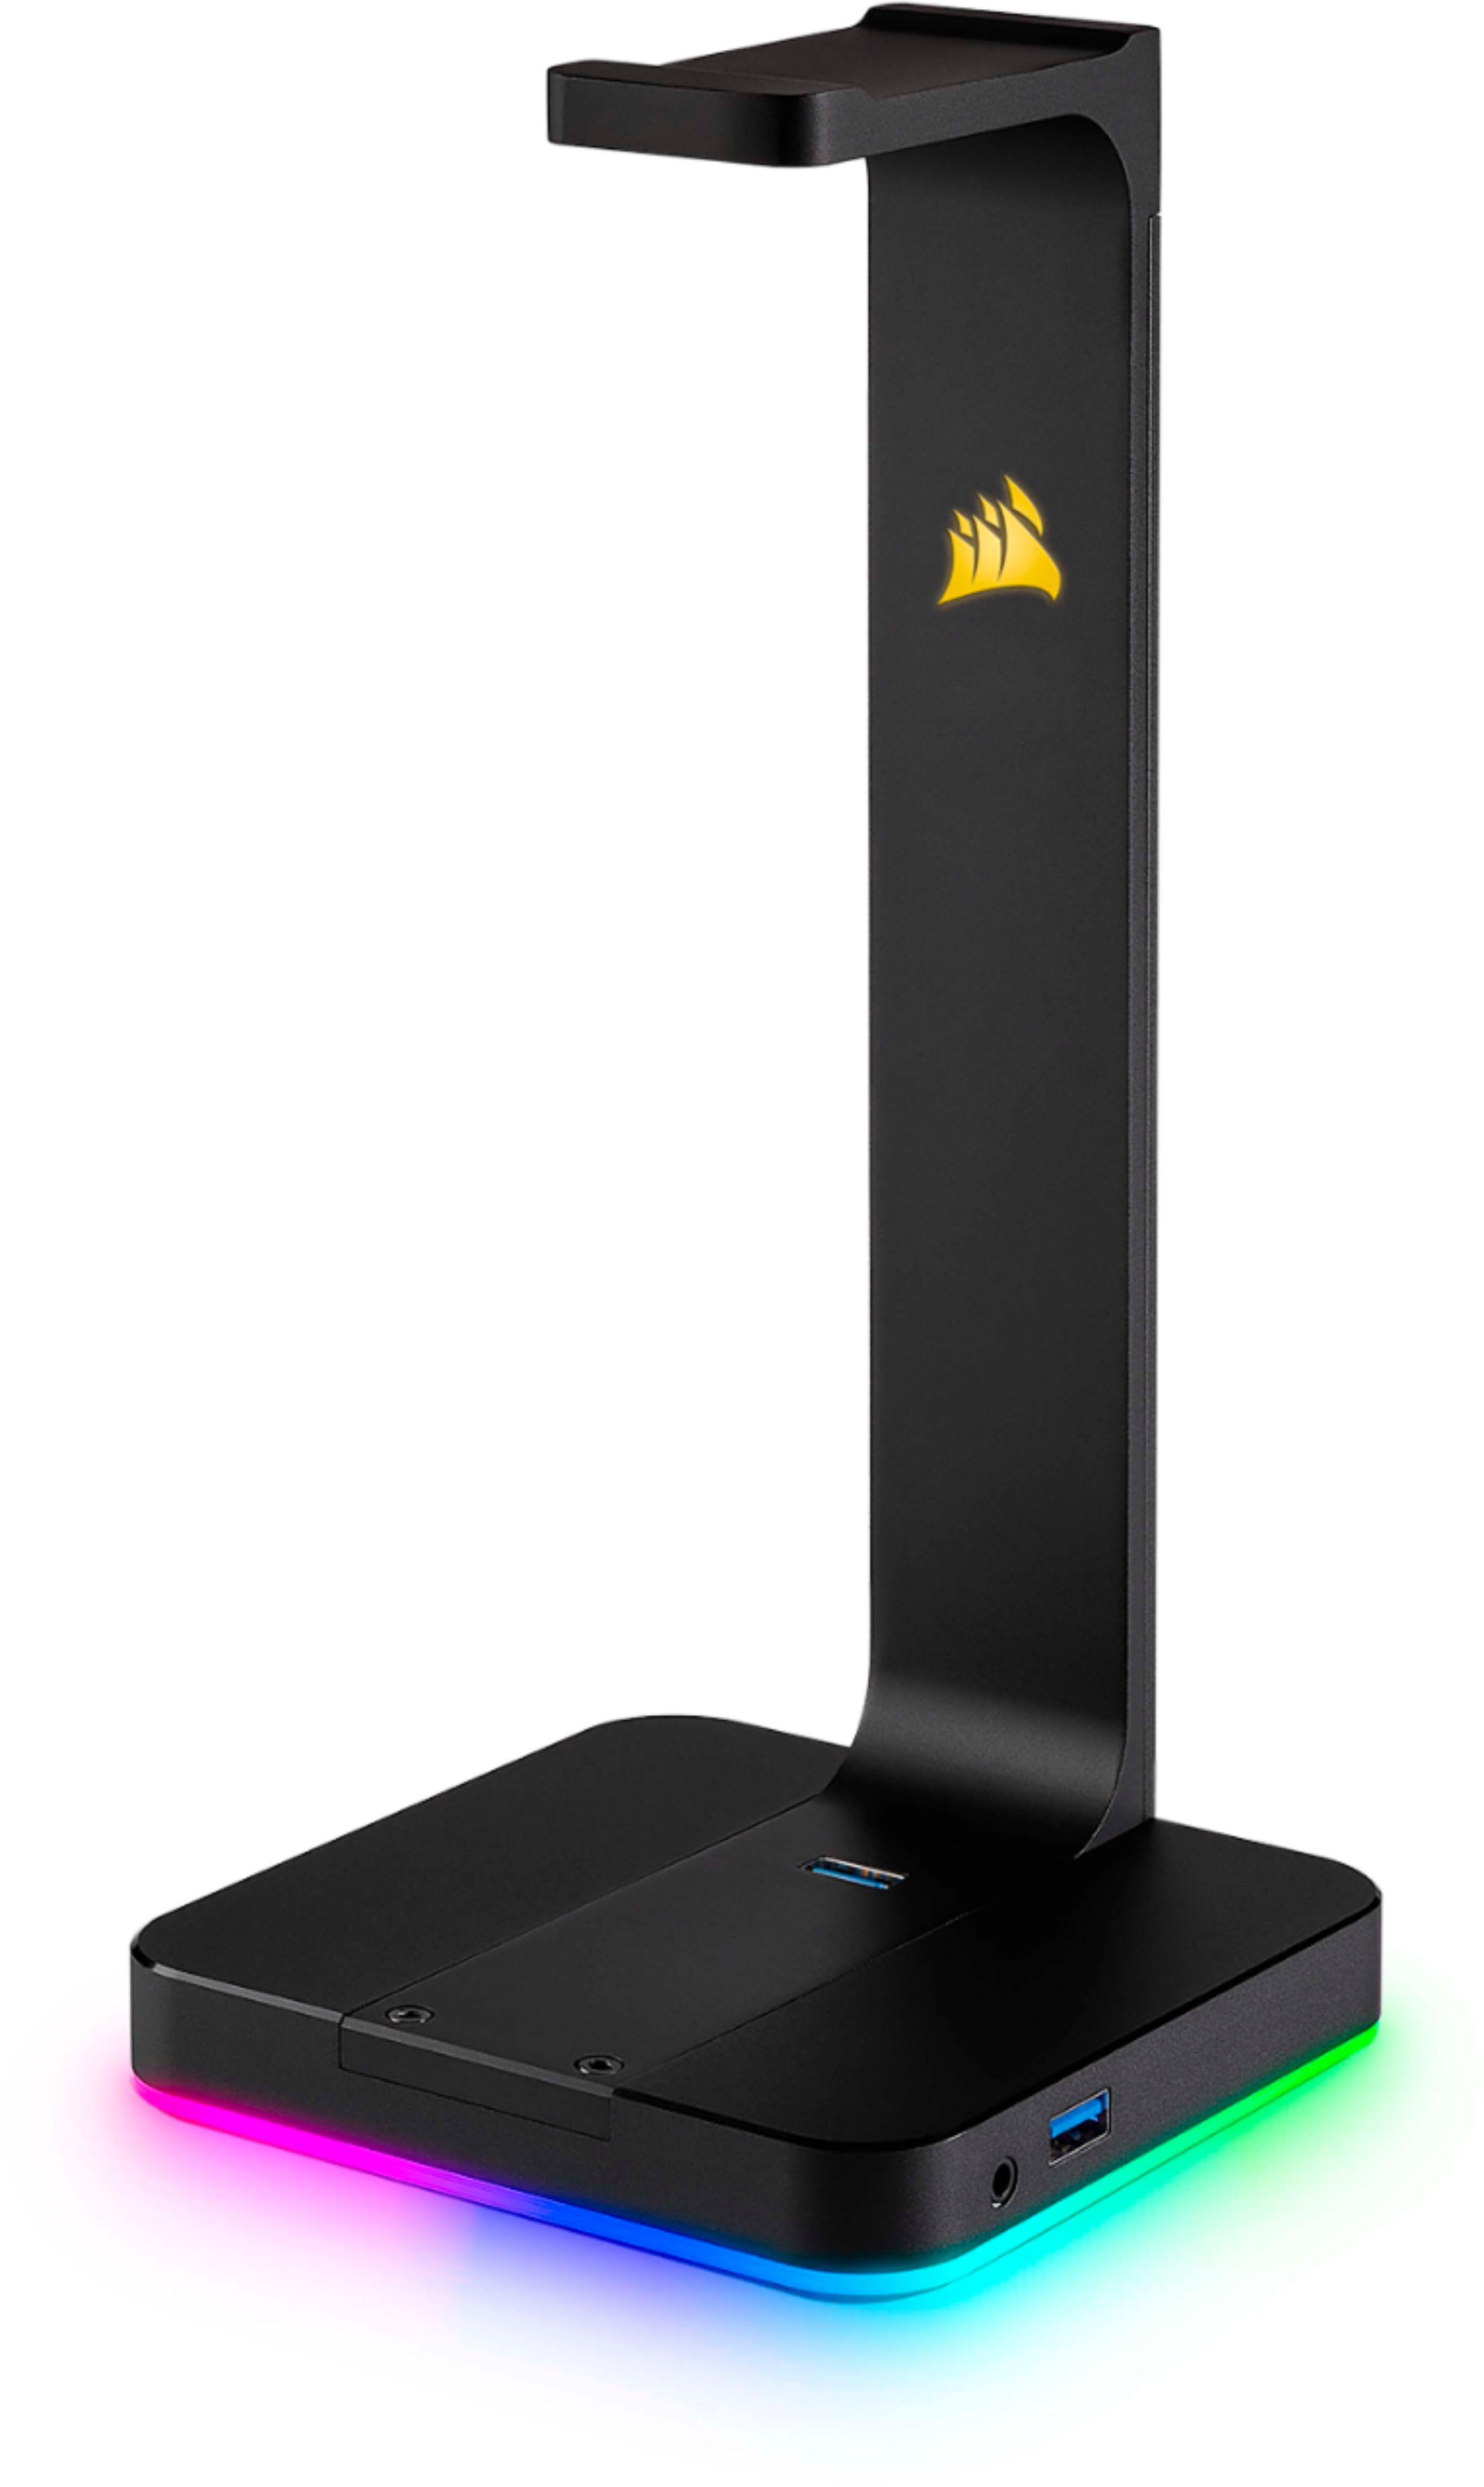 Vorming samenzwering lijst CORSAIR Gaming ST100 RGB Premium Headset Stand Black CA-9011167-NA - Best  Buy